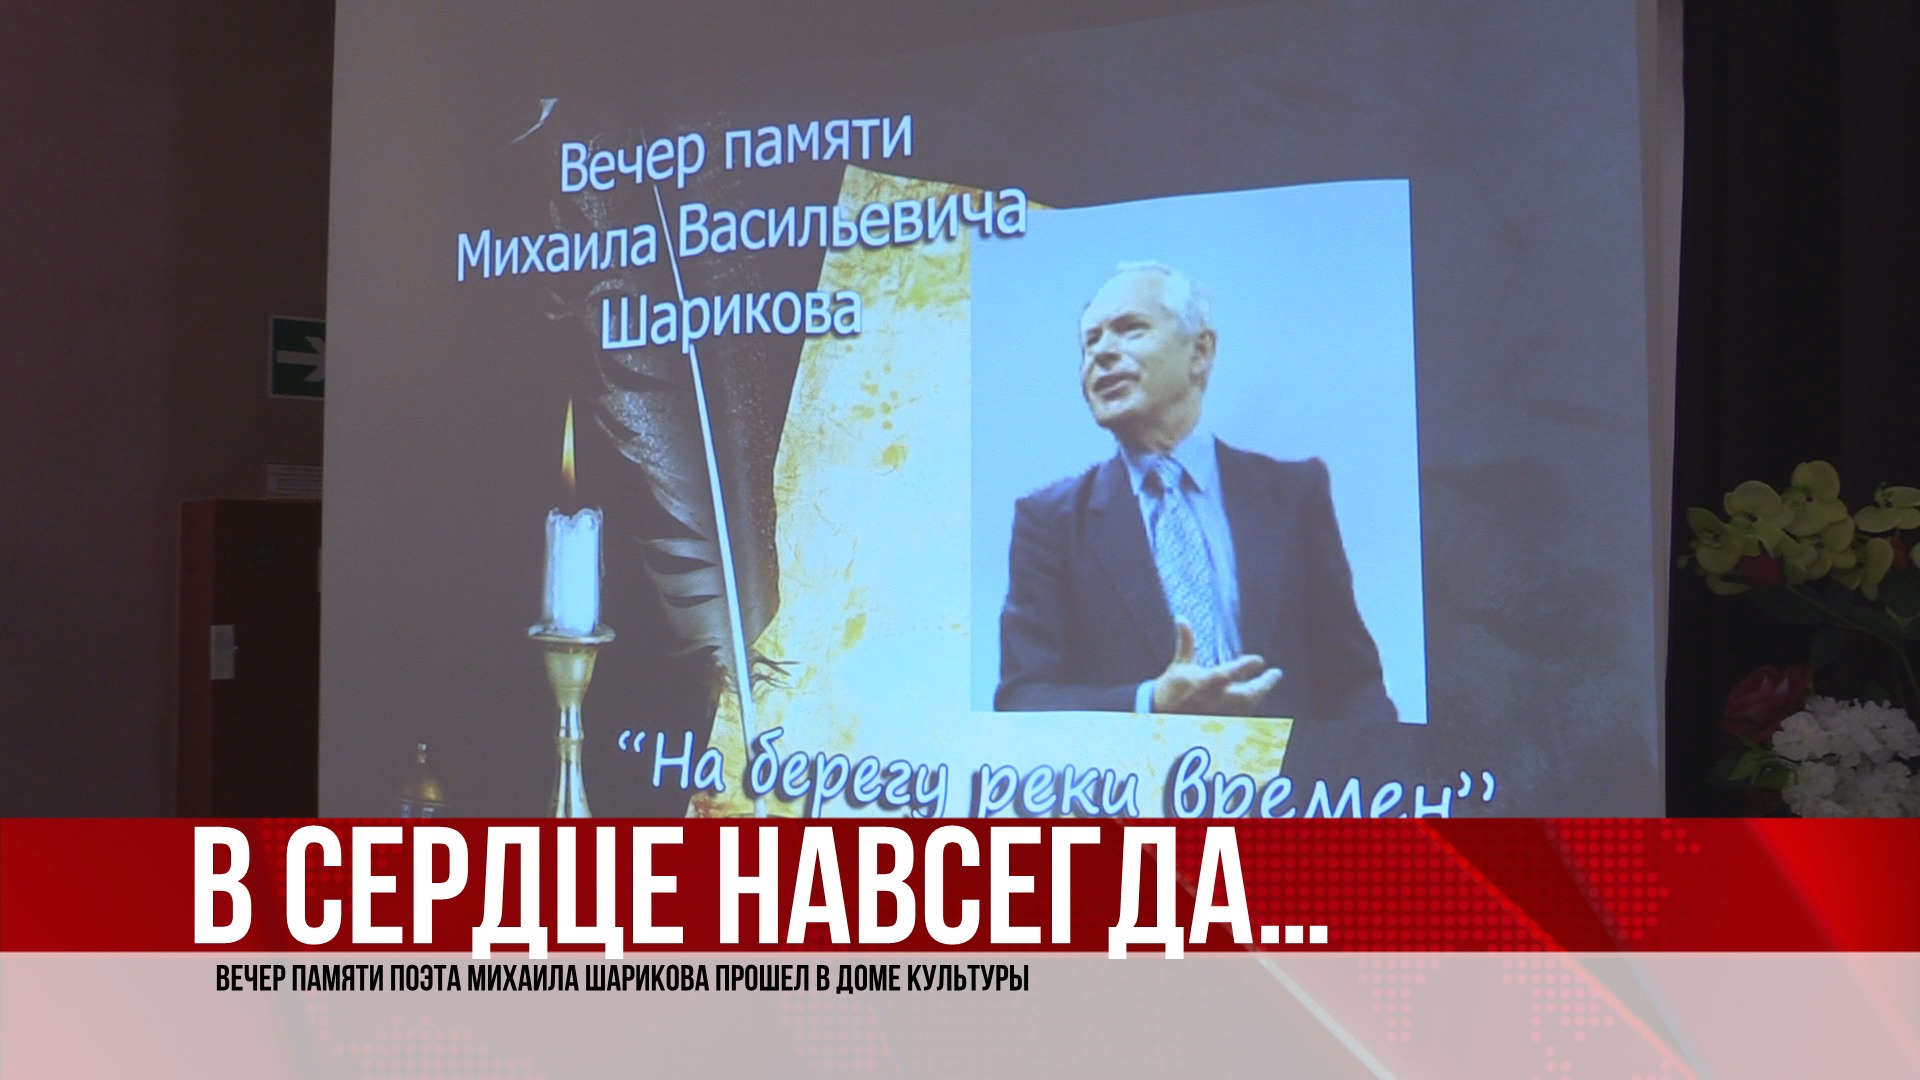 В доме культуры состоялся вечер памяти Михаила Васильевича Шарикова. (06.04.22).MP4